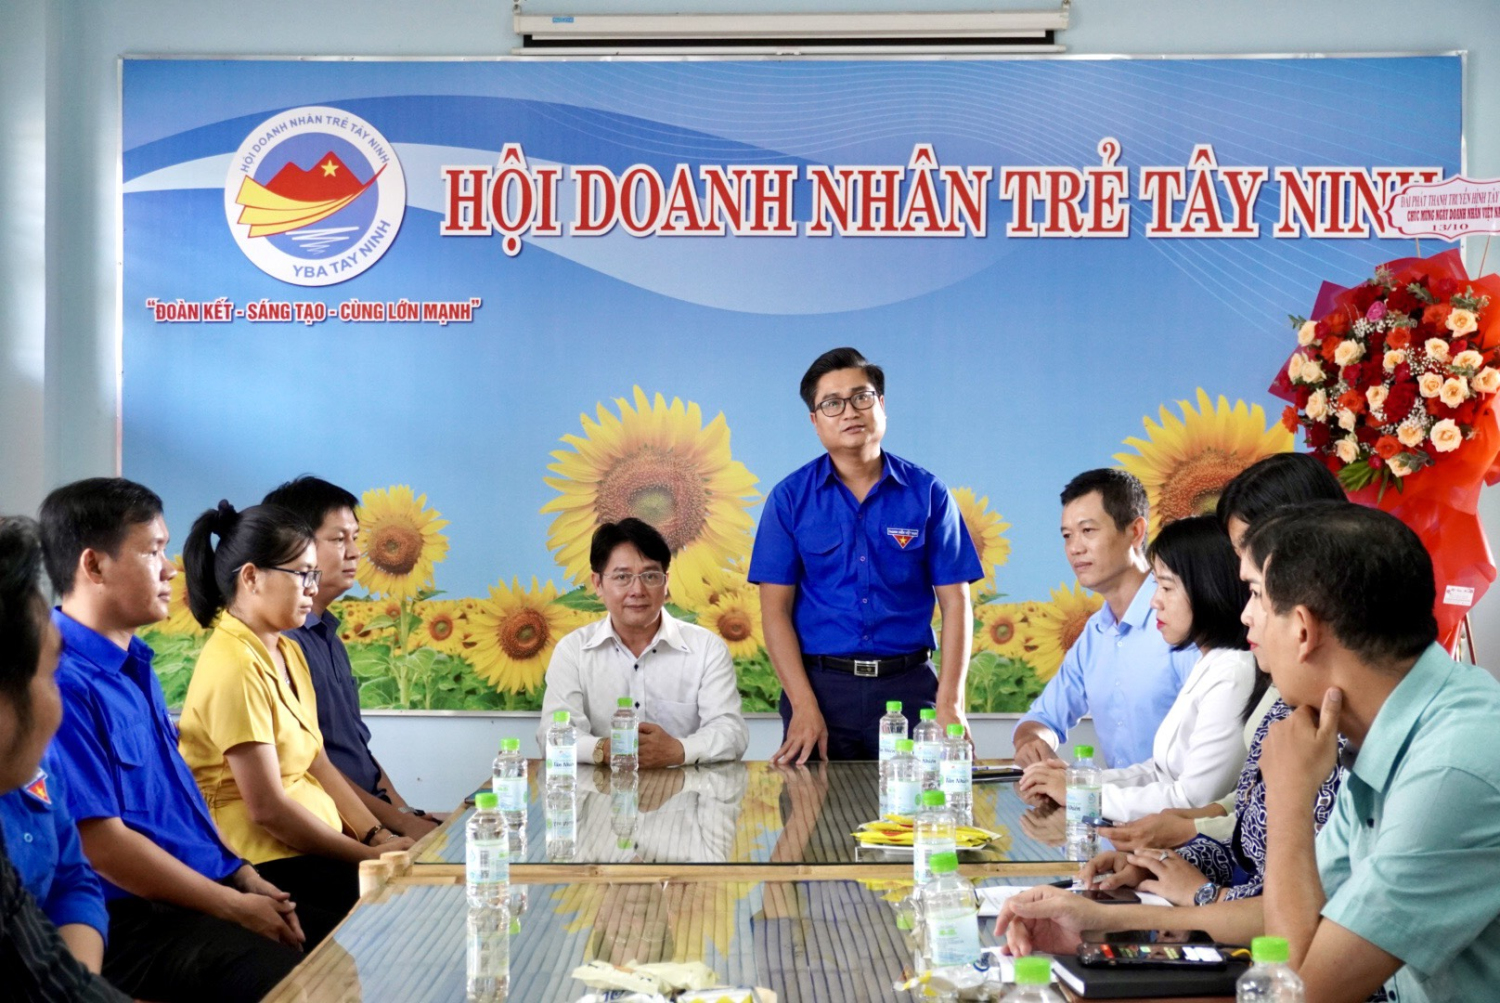 Tây Ninh: chúc mừng Hội doanh nhân trẻ tỉnh Tây Ninh